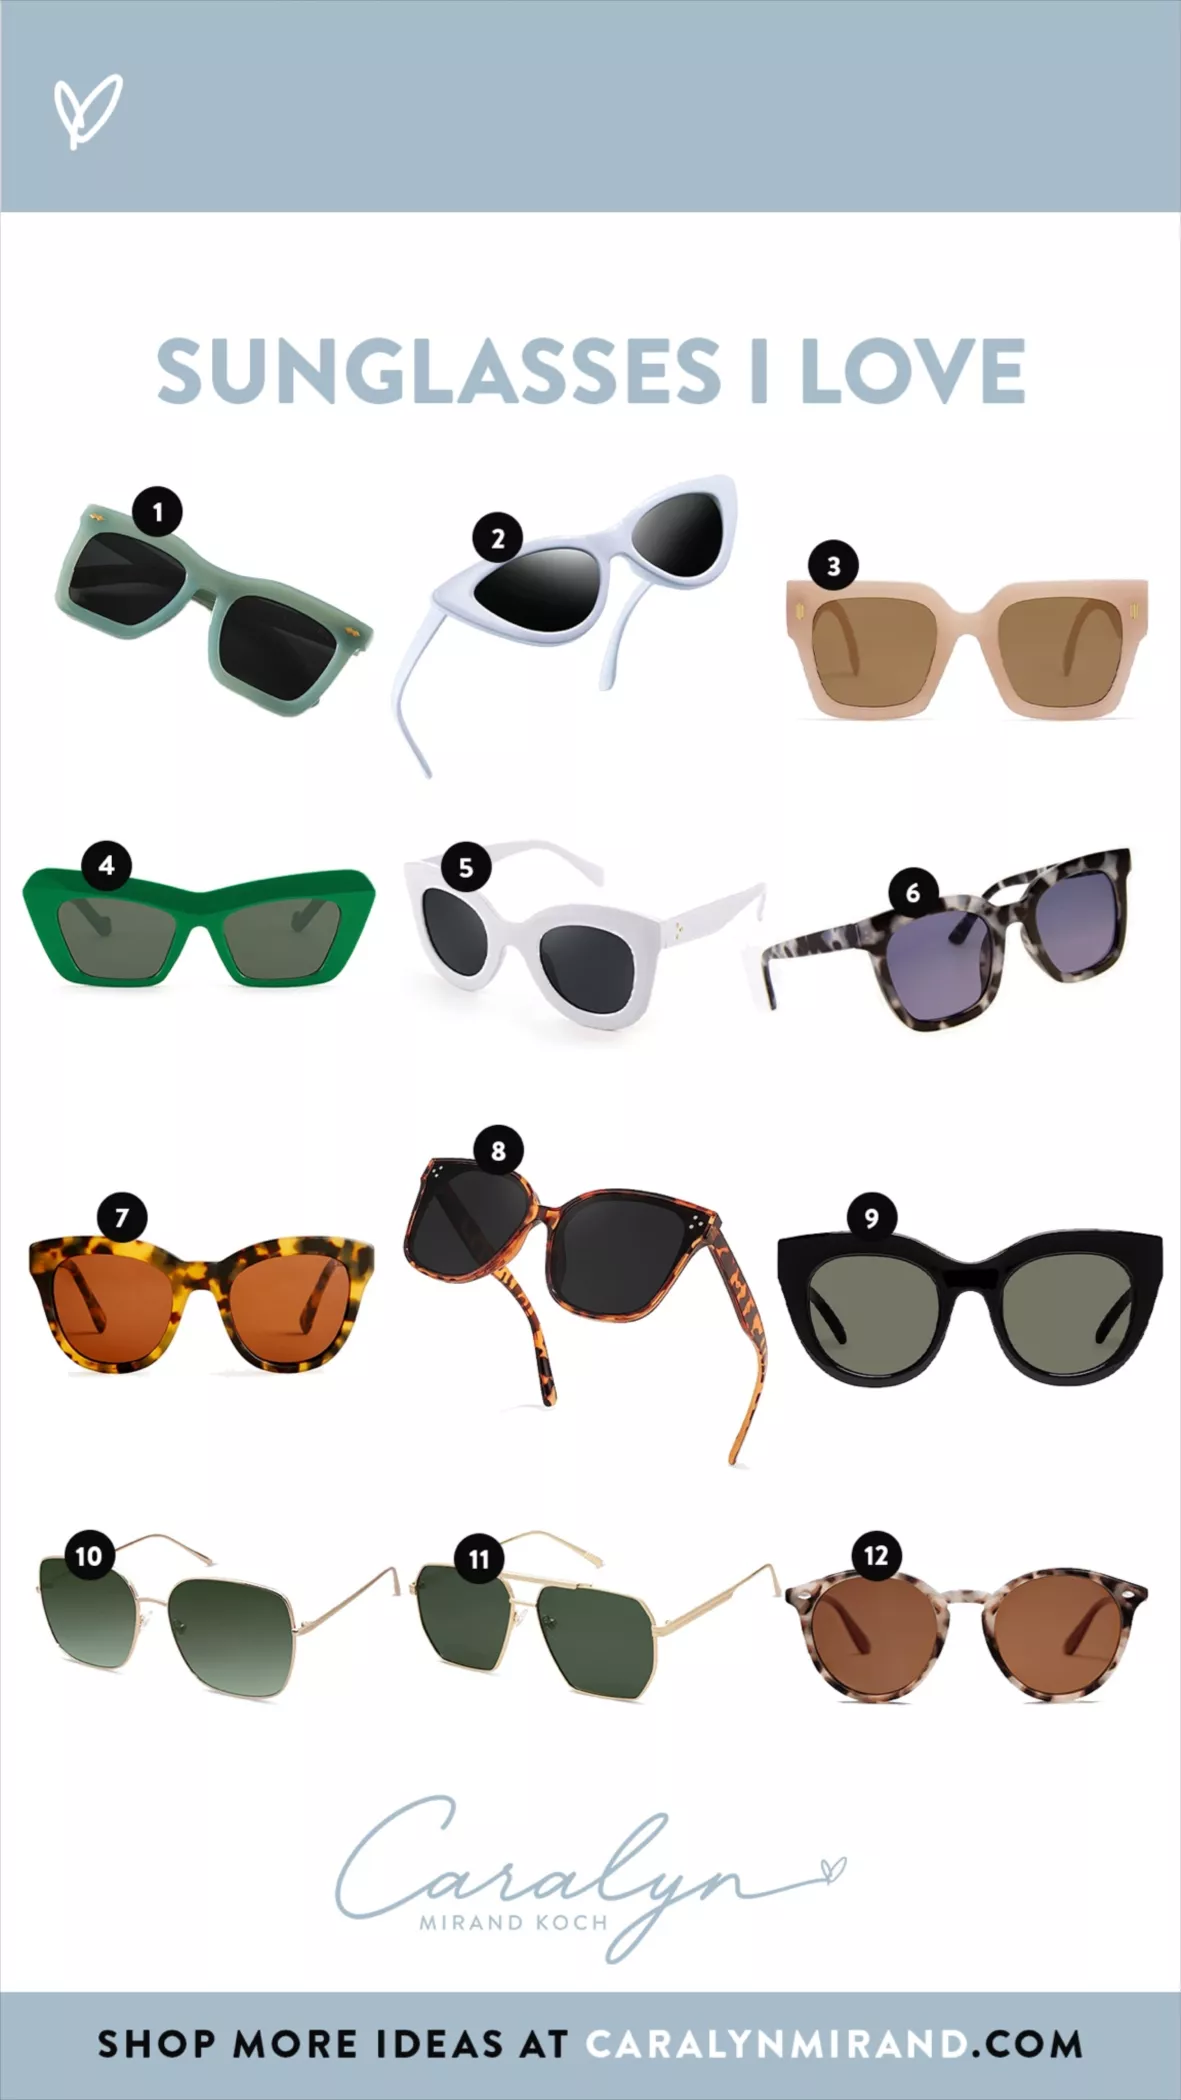 I-SEA Maverick Polarized Sunglasses